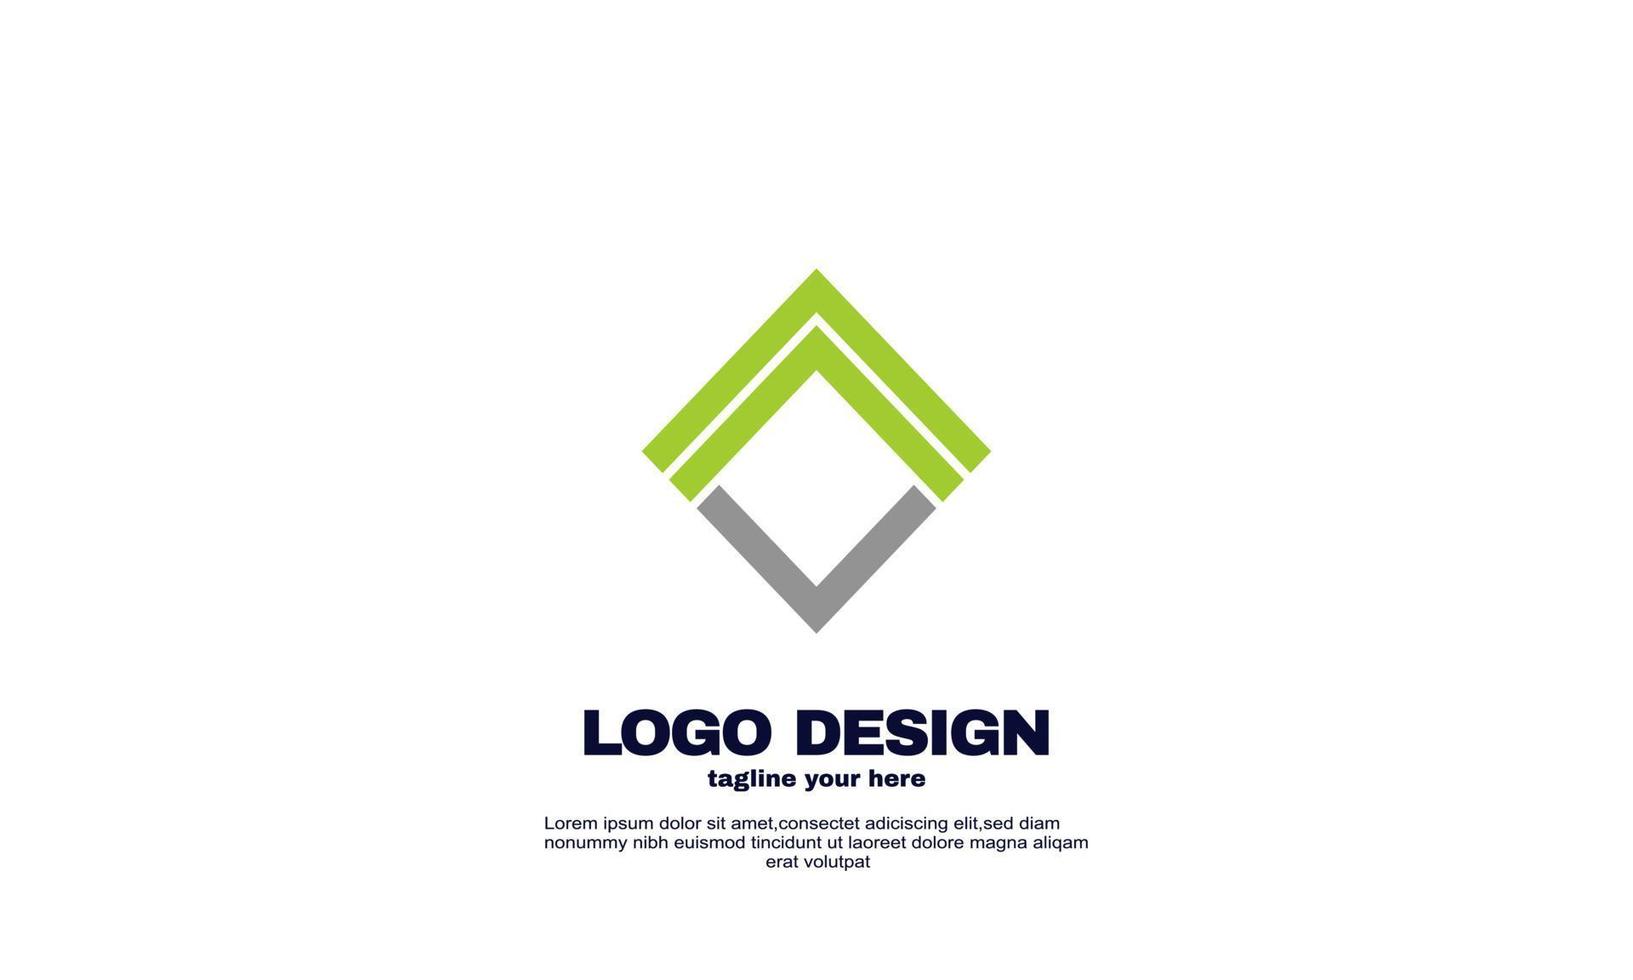 éléments de conception créatifs impressionnants vecteur de conception de logo unique pour votre entreprise